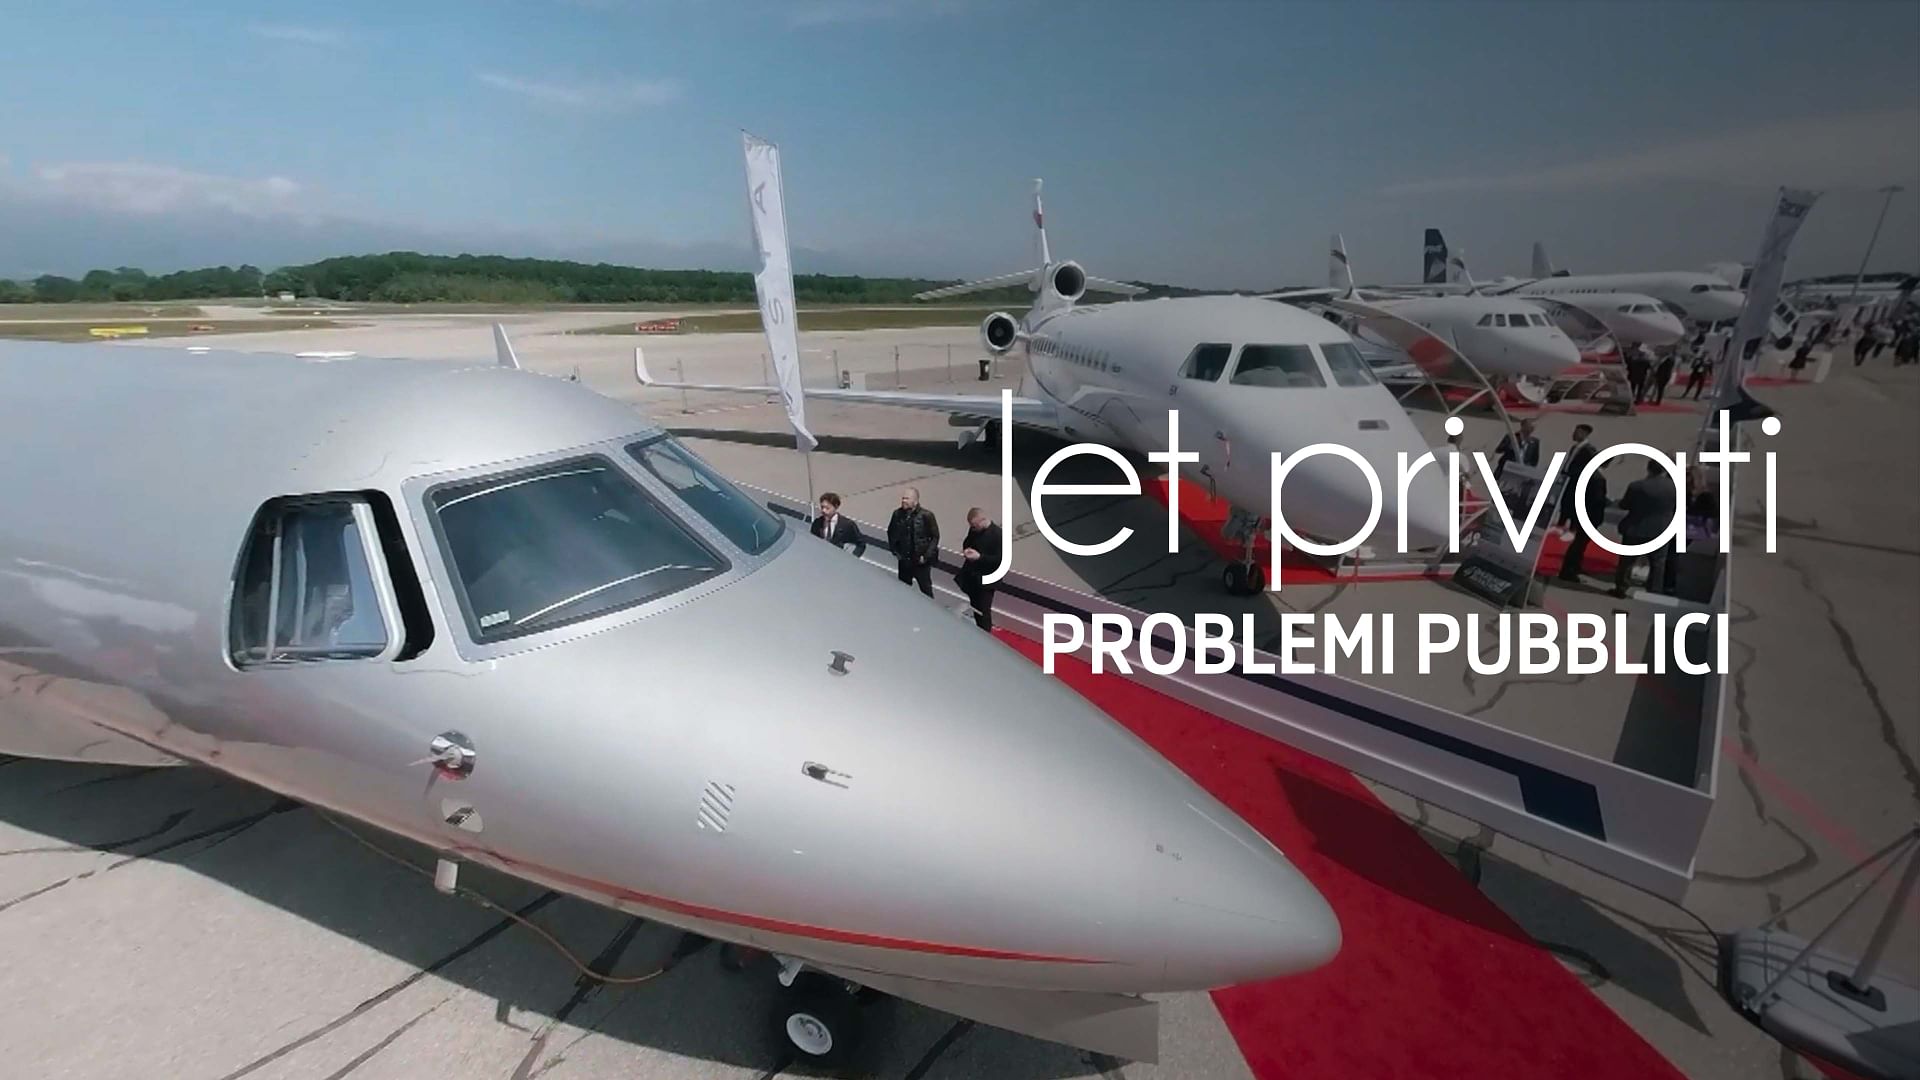 Jet privati, problemi pubblici